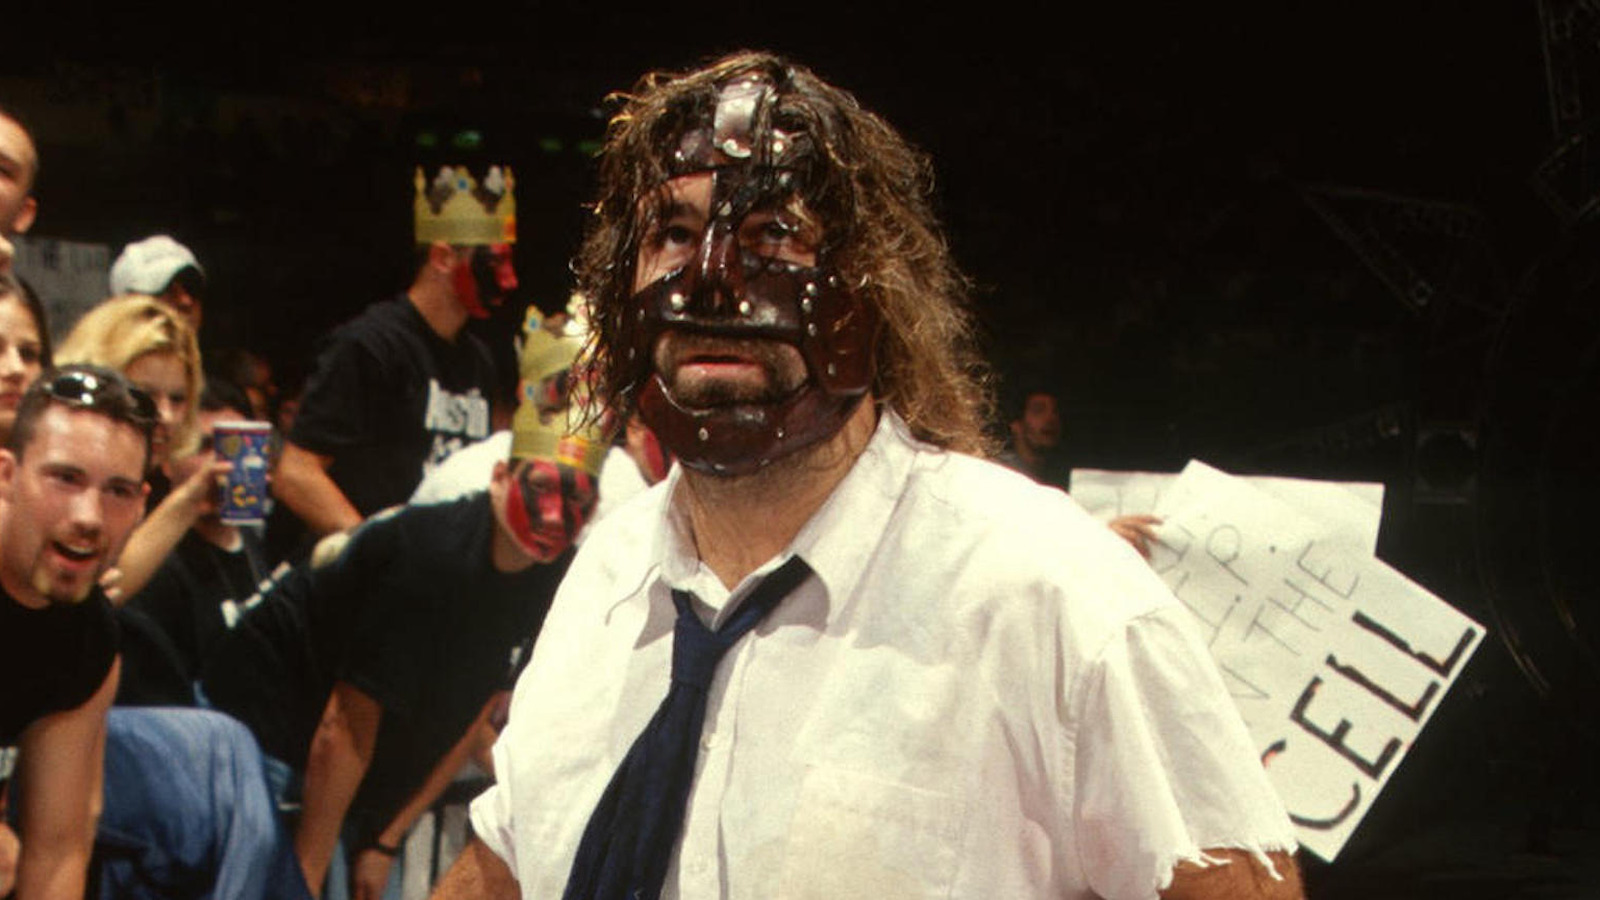 Mick Foley seguro que el momento clásico de Hell in a Cell nunca podría suceder en la WWE hoy